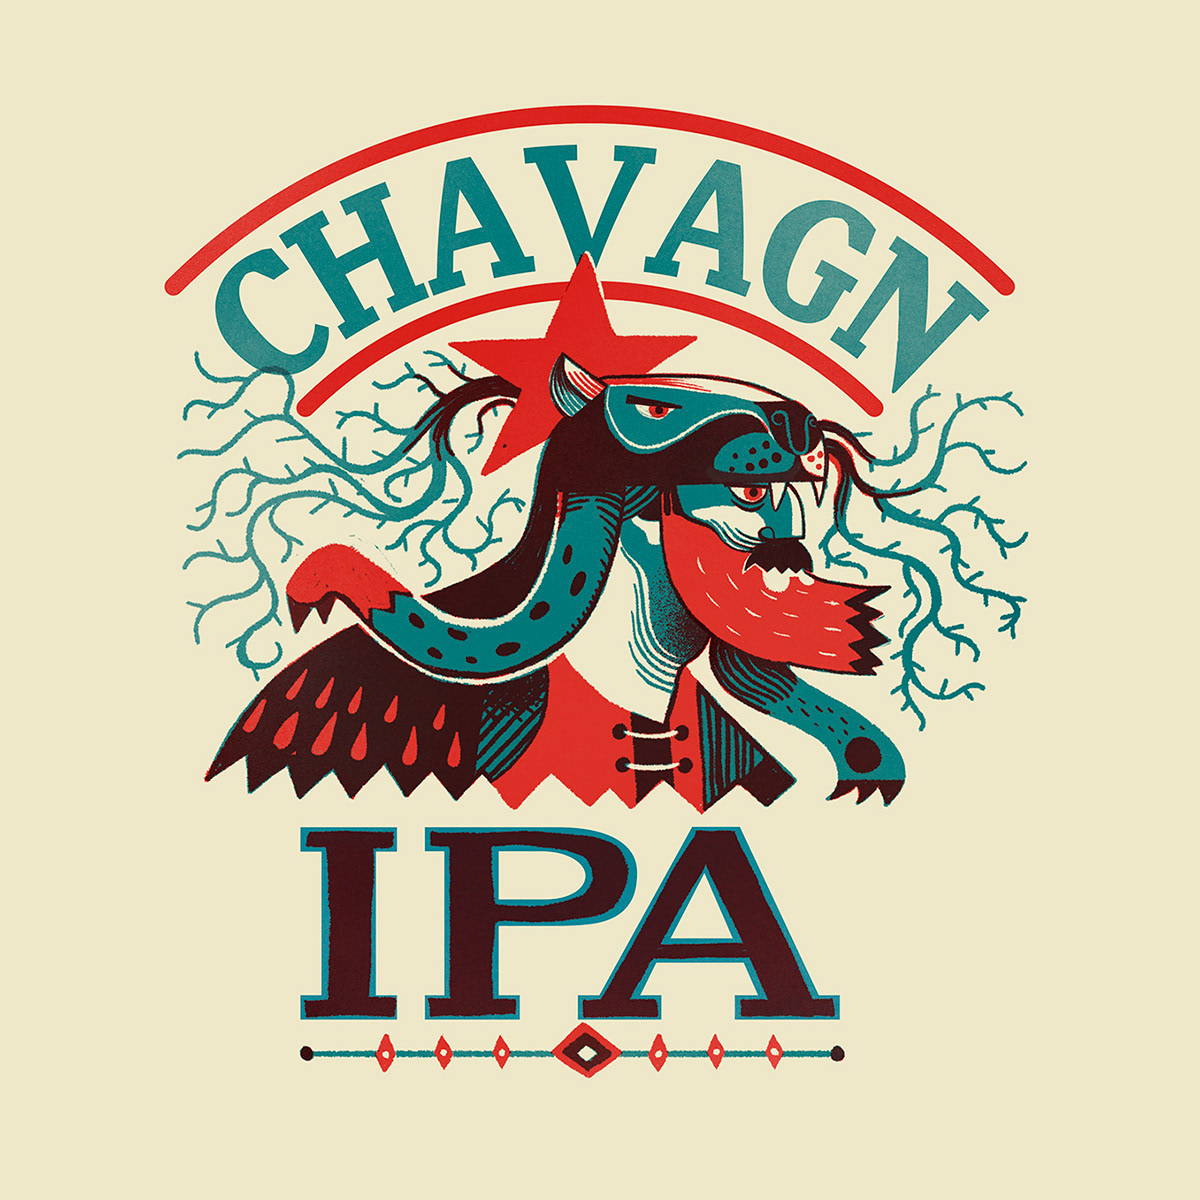 chavagn beerlabel beer Packaging design brewery label illustration